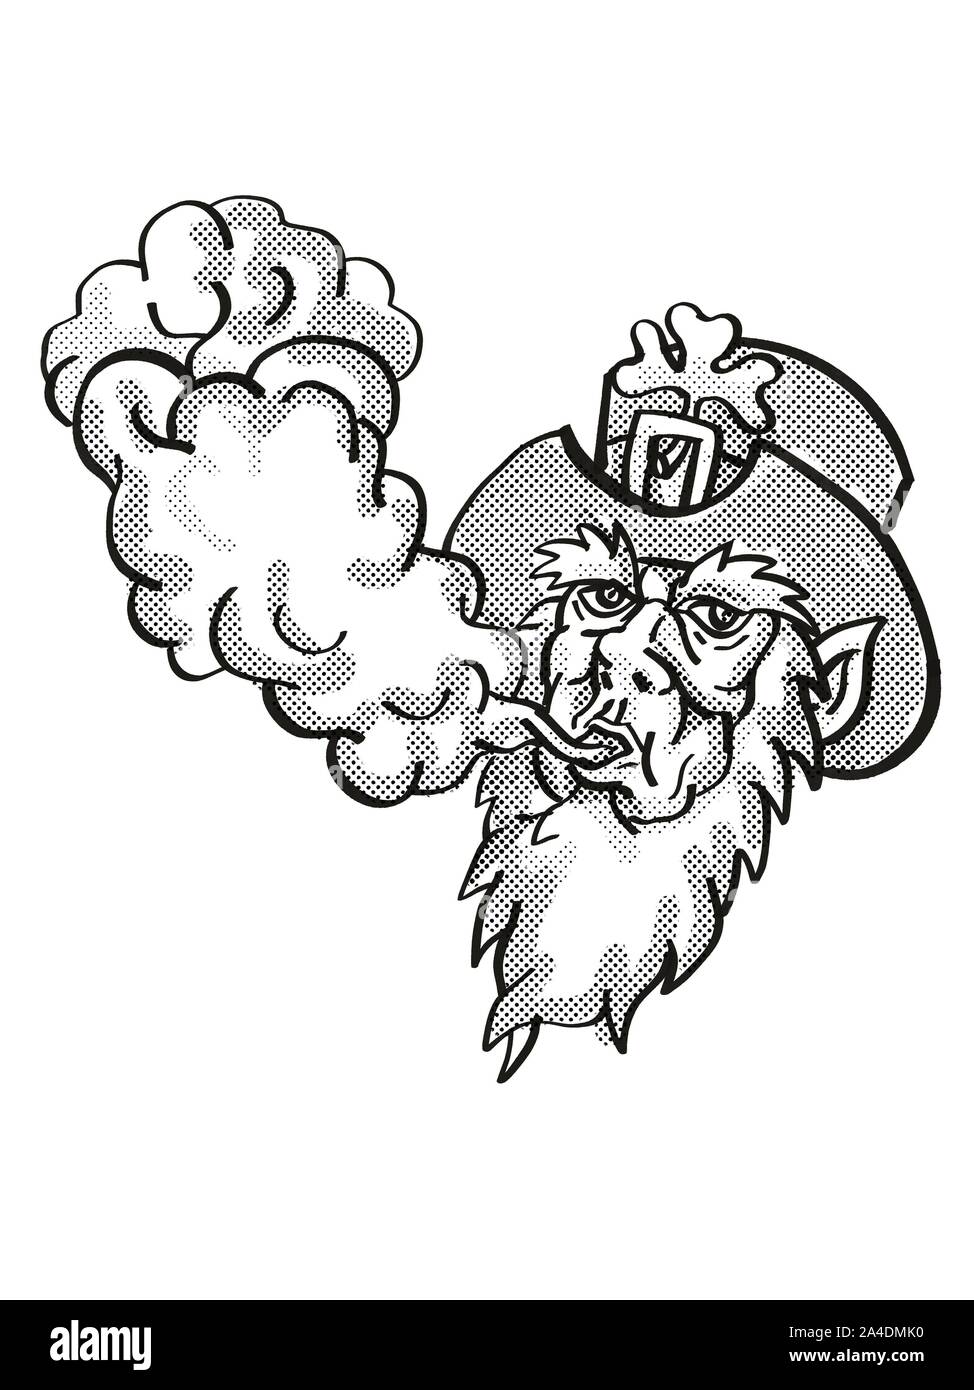 Cartoon style tatouage dessin illustration d'un farfadet irlandais Vaping souffler la fumée sur fond isolé en noir et blanc. Banque D'Images